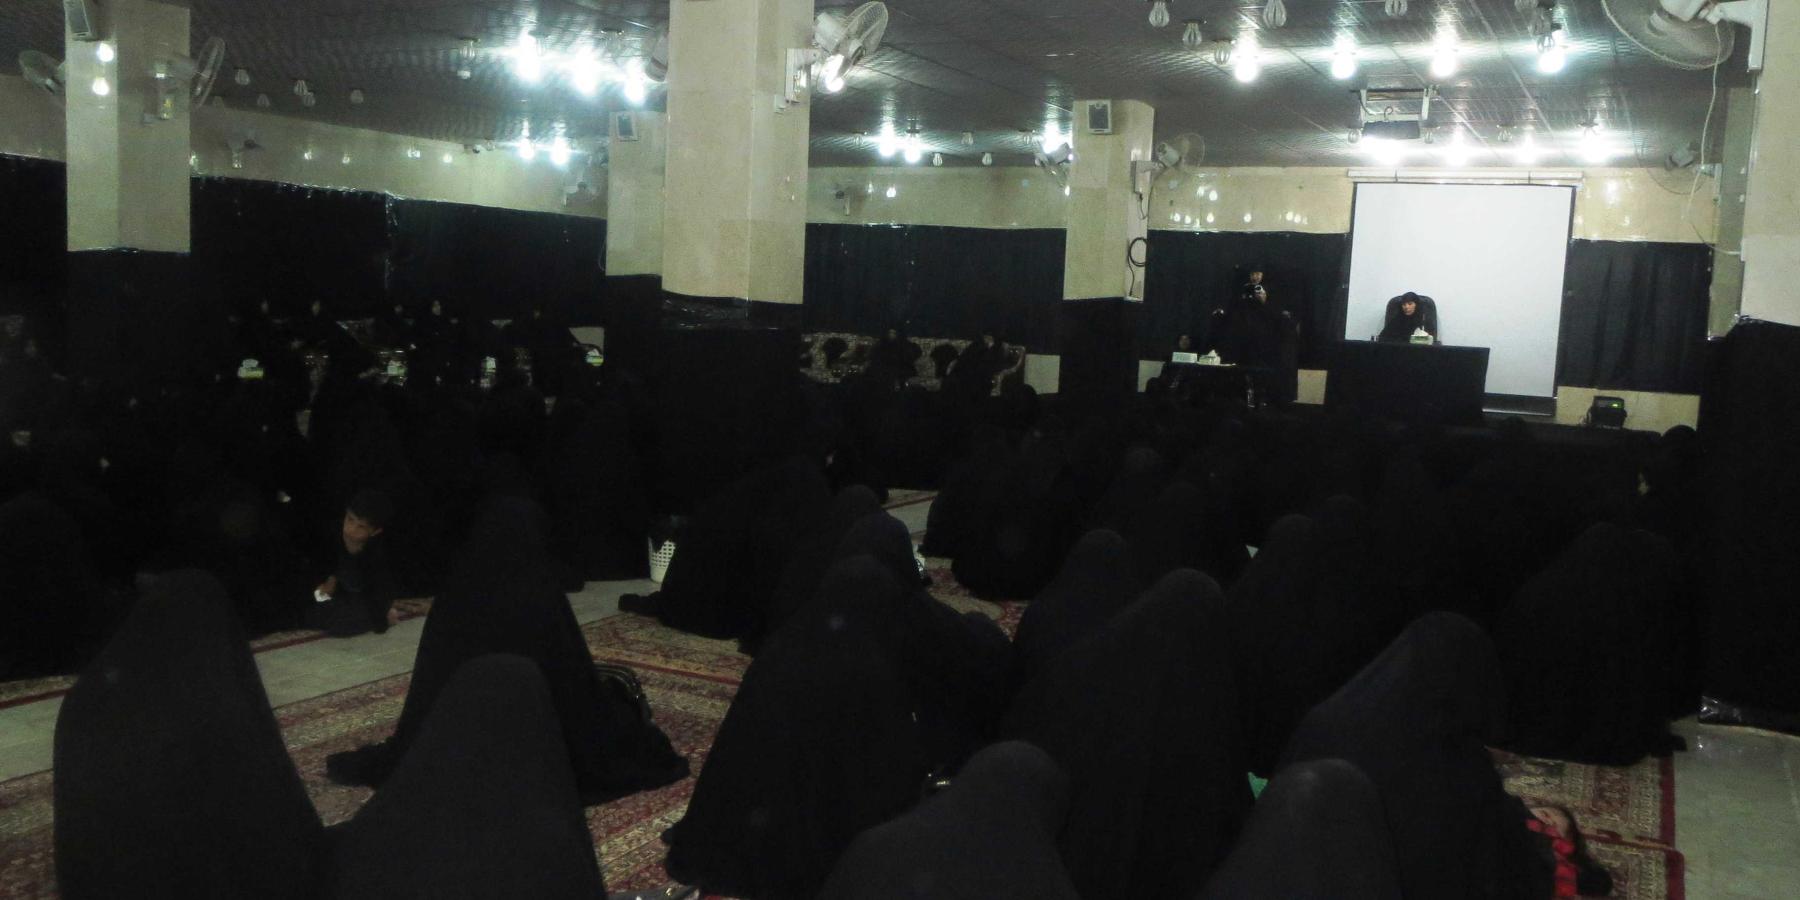 قسم الشؤون النسوية في العتبة العلوية المقدسة يبدأ بإقامة  مجلس عزاء في ذكرى استشهاد الإمام الحسين (عليه السلام) 